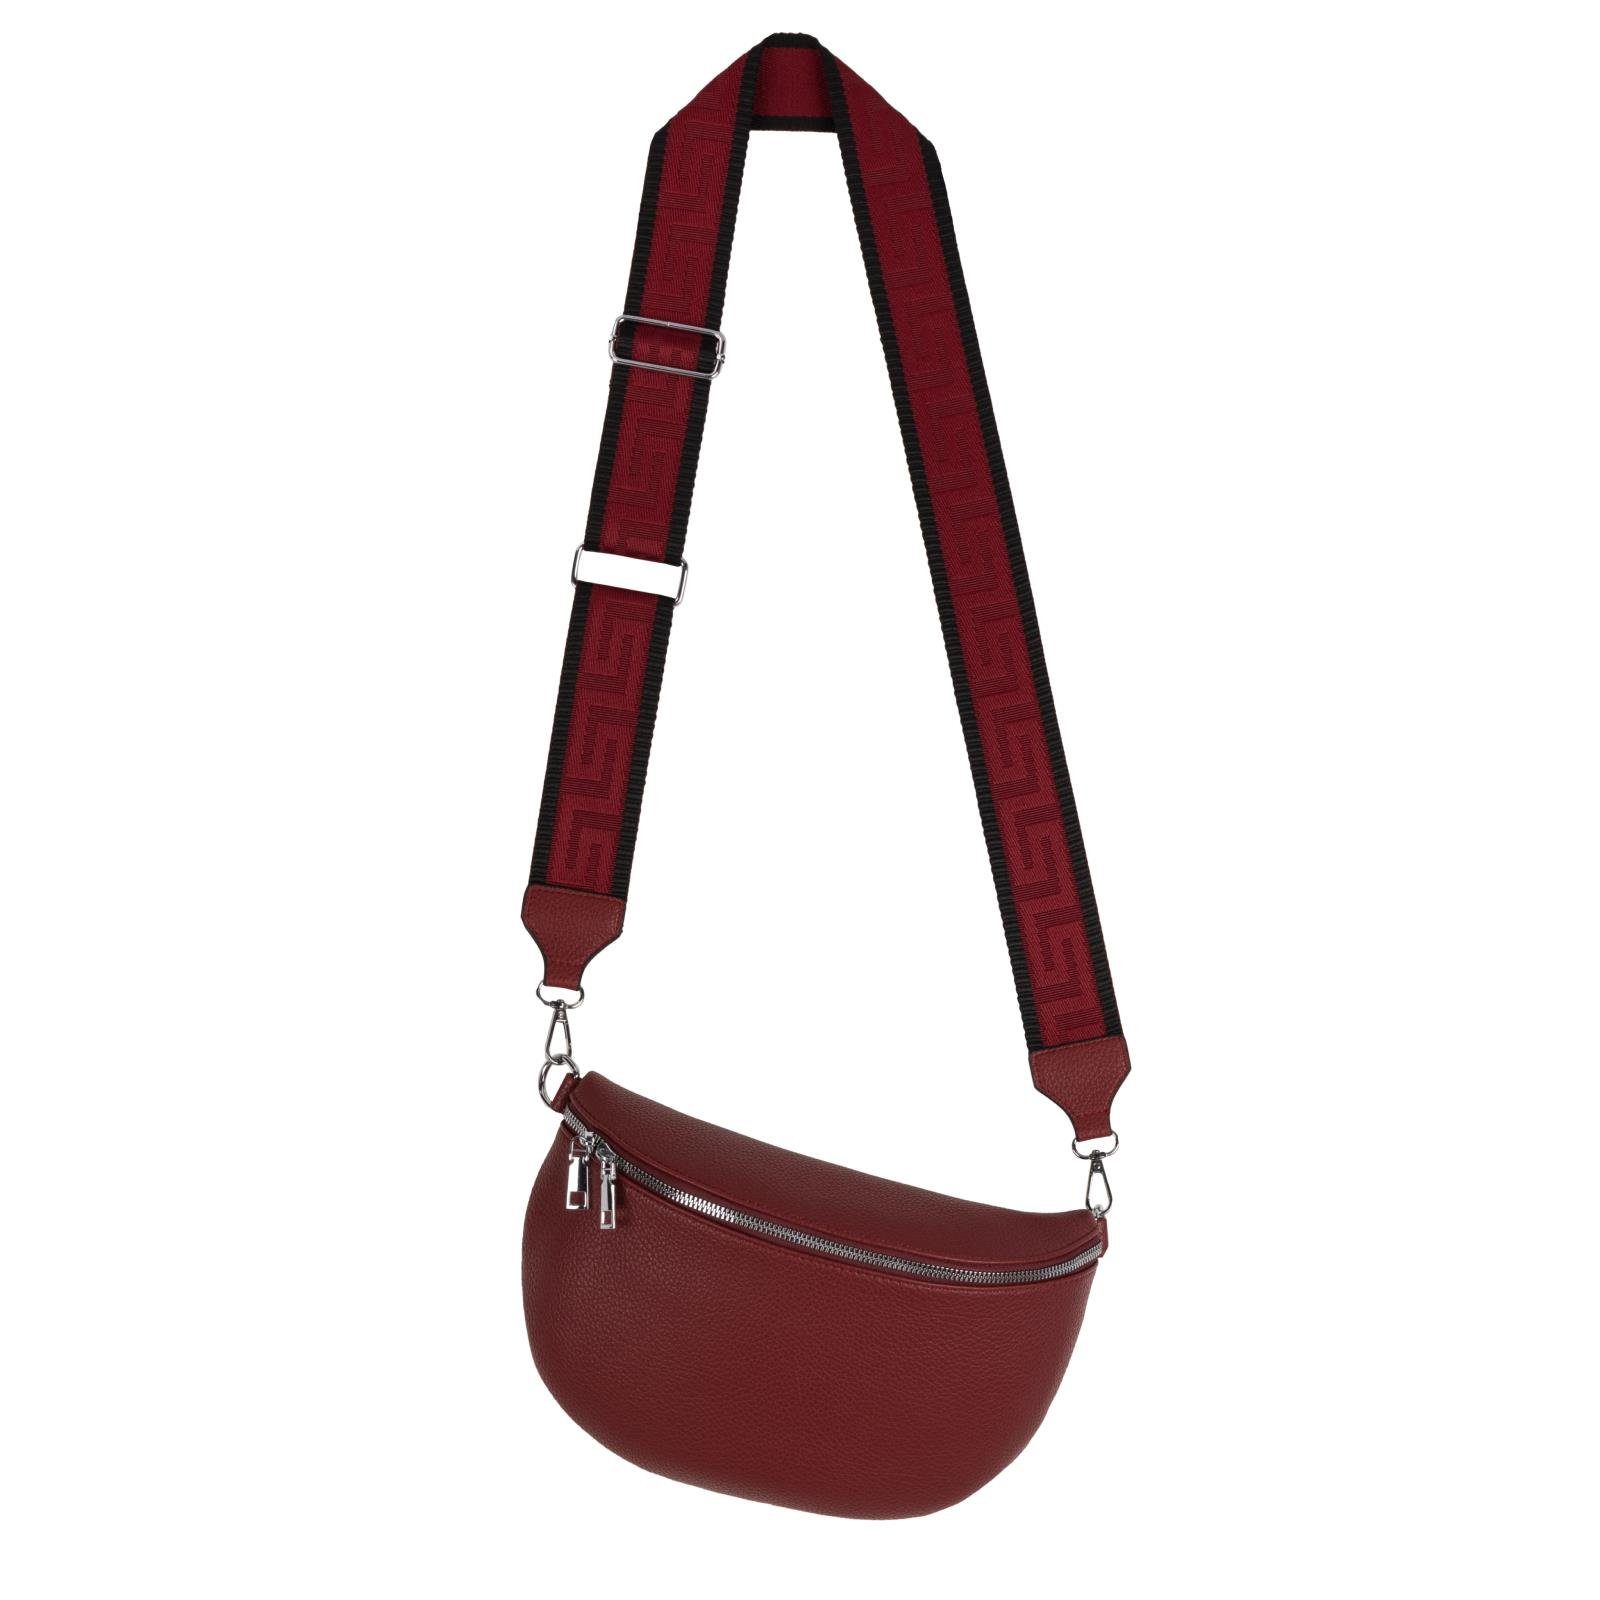 EAAKIE Gürteltasche Bauchtasche CrossOver, Hüfttasche Schultertasche, XL Italy, Umhängetasche als Kunstleder Crossbody-Bag Umhängetasche PURPLE-RED tragbar